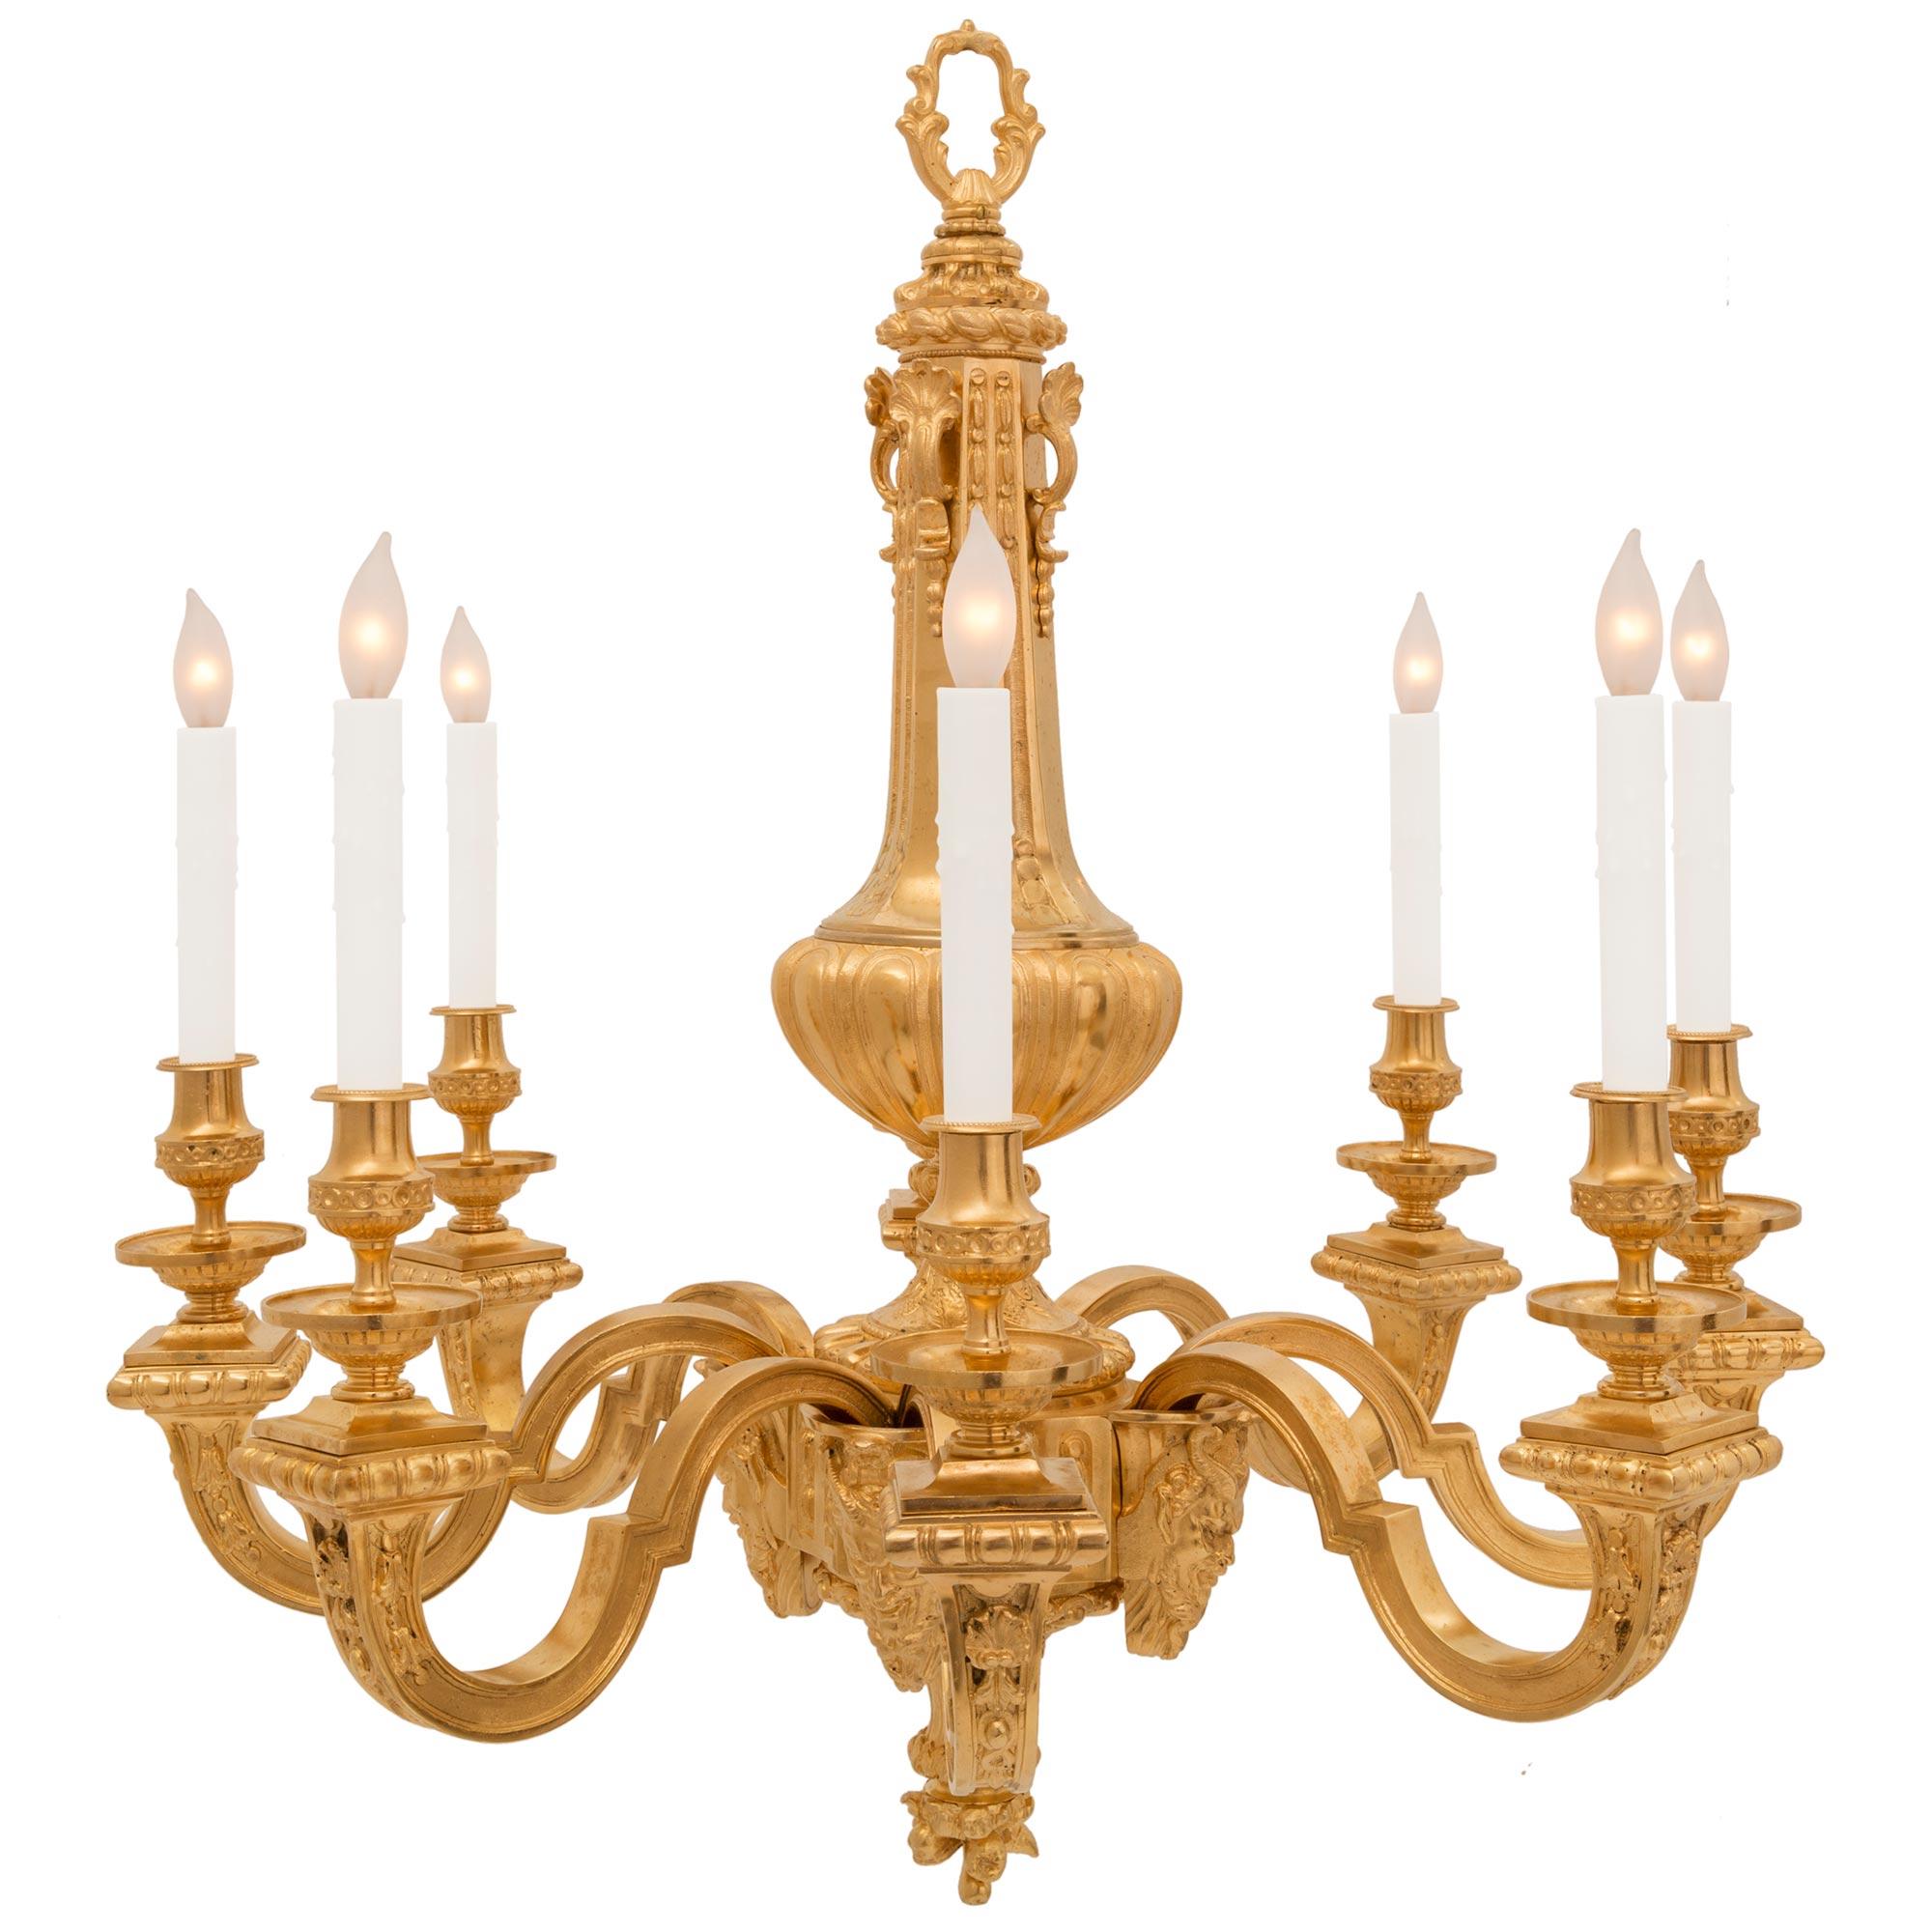 Exceptionnel lustre français du 19ème siècle en st. Louis XVI et bronze doré. Le lustre à huit bras est centré par un magnifique fleuron inférieur richement ciselé sous le support élégamment incurvé avec de fins détails feuillagés. Les bras partent